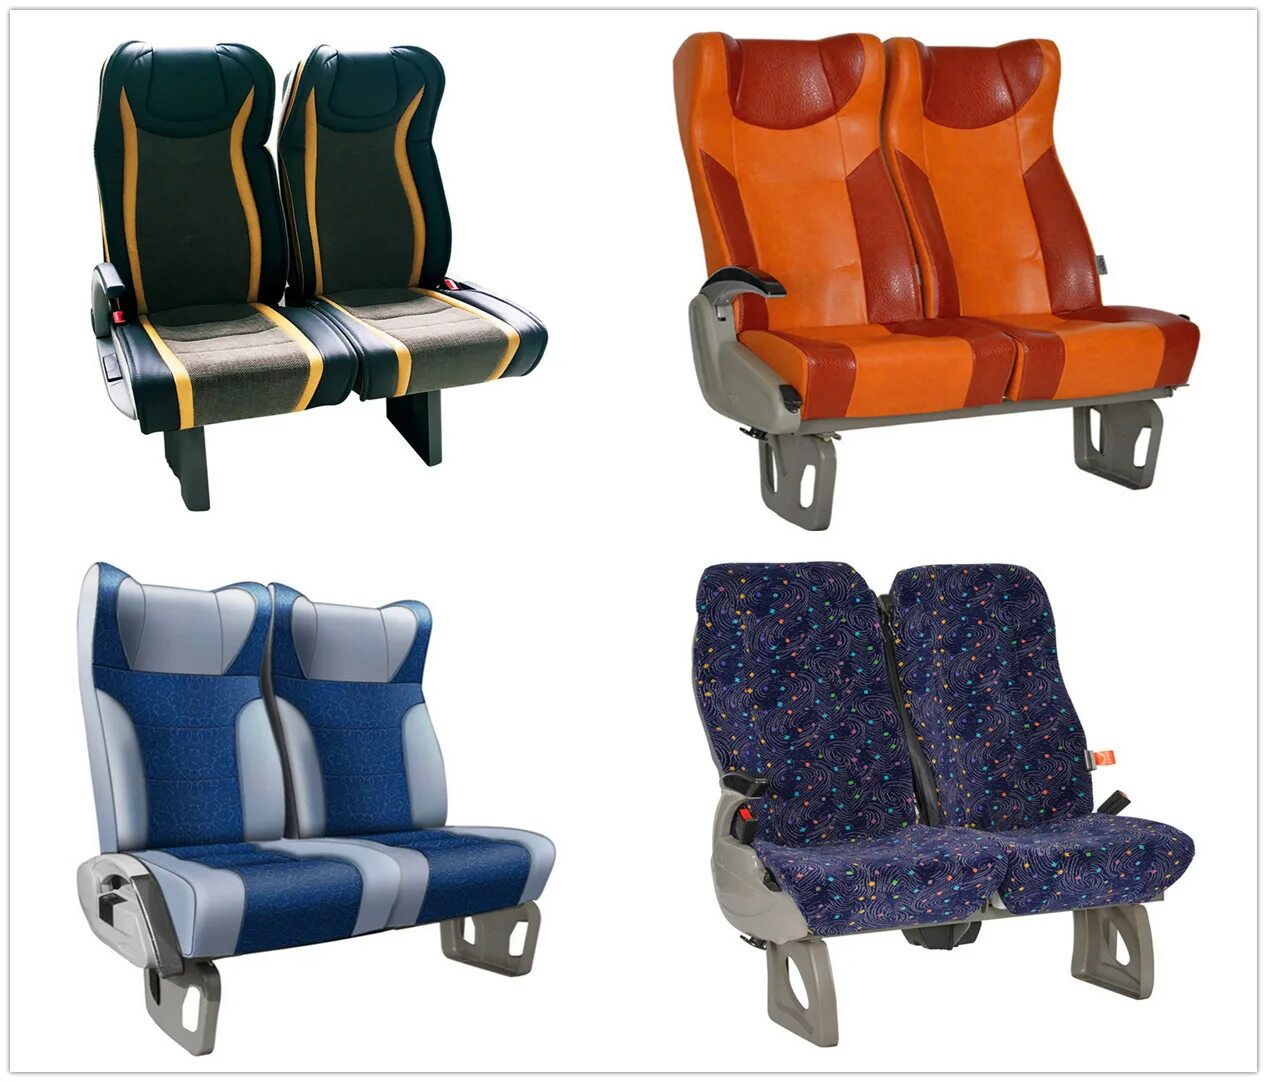 Bus seats. Ютонг сиденья. Пассажирское сиденье. Кресло в автобусе. Пассажирские сиденья для автобусов.